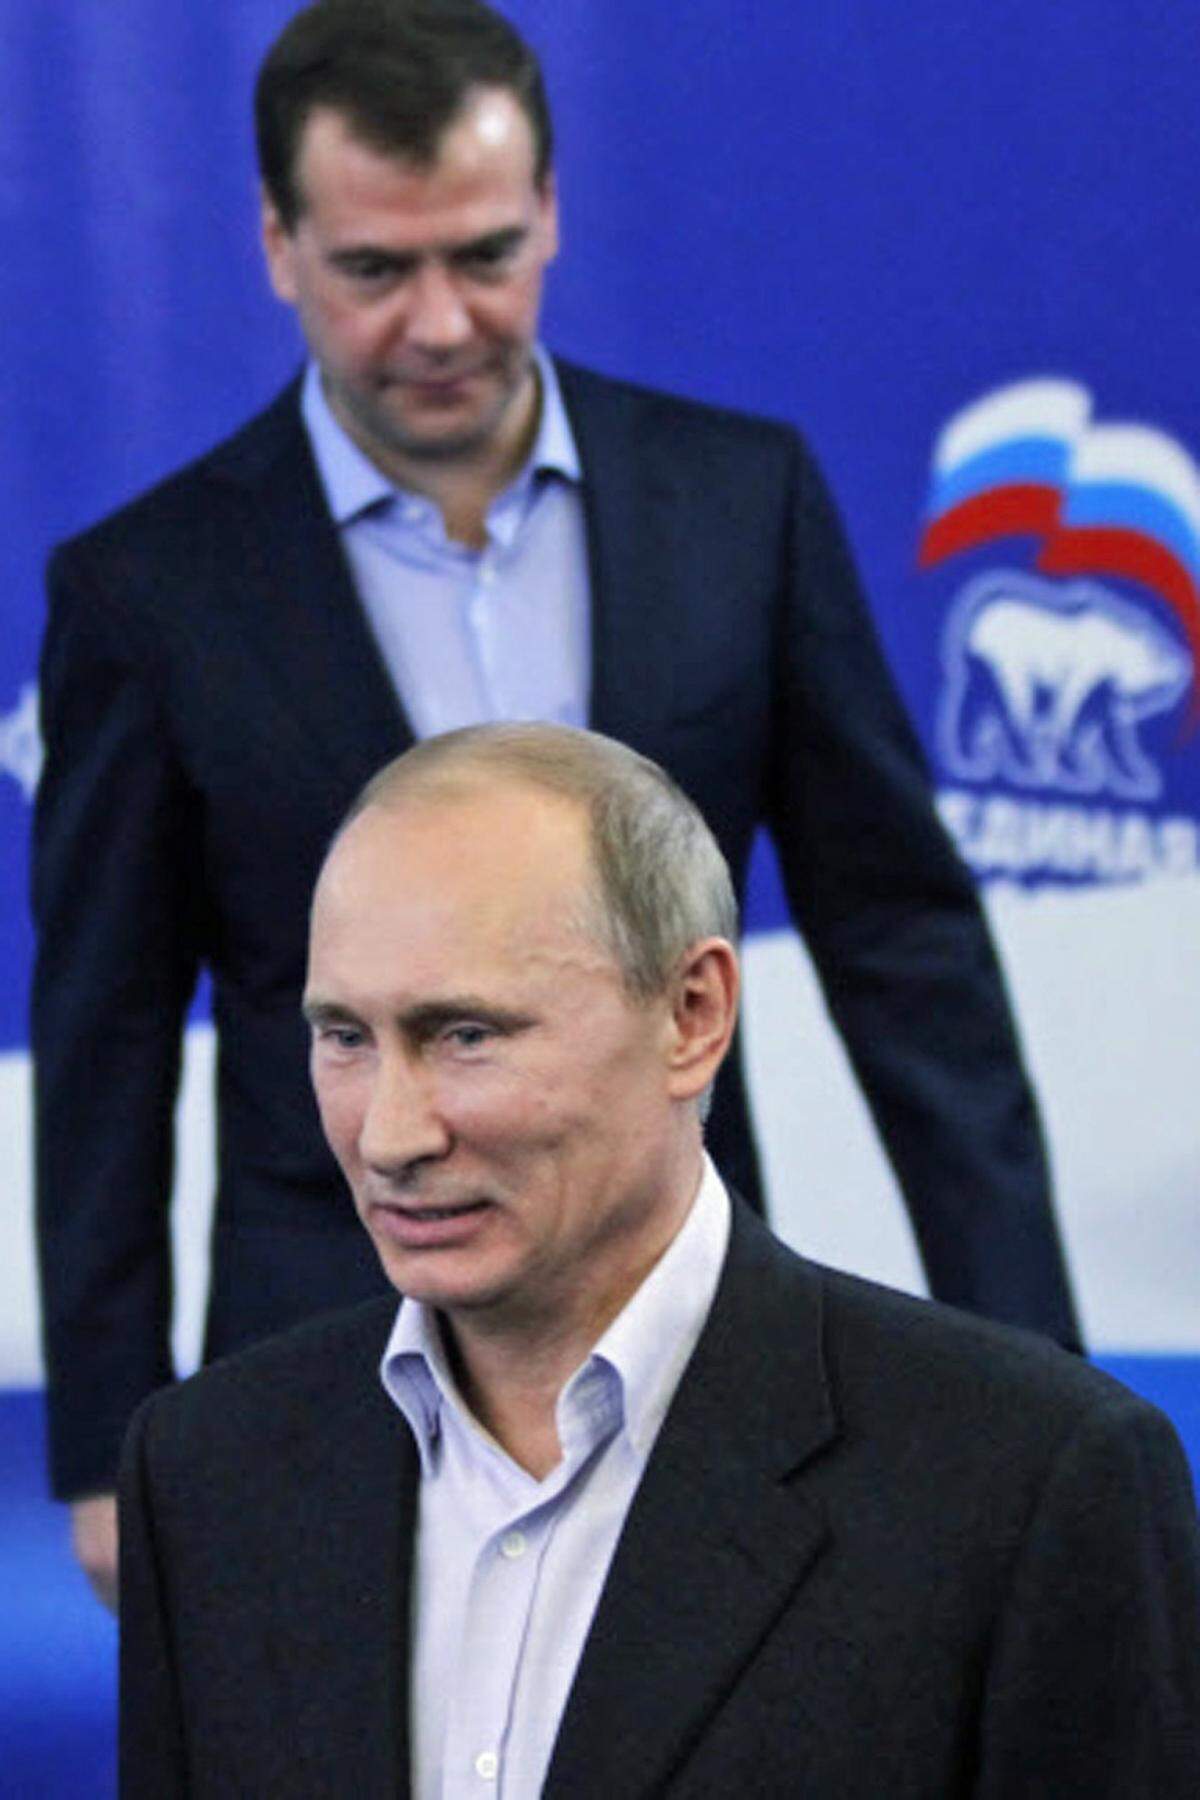 Putin sprach nach der Stimmauszählung von einem "optimalen Resultat in einer schwierigen Zeit" - ungeachtet der Stimmverluste sowie massiven Fälschungsvorwürfen. Das Ergebnis gewährleiste die Fortsetzung der stabilen Entwicklung des Landes, so der Ministerpräsident.